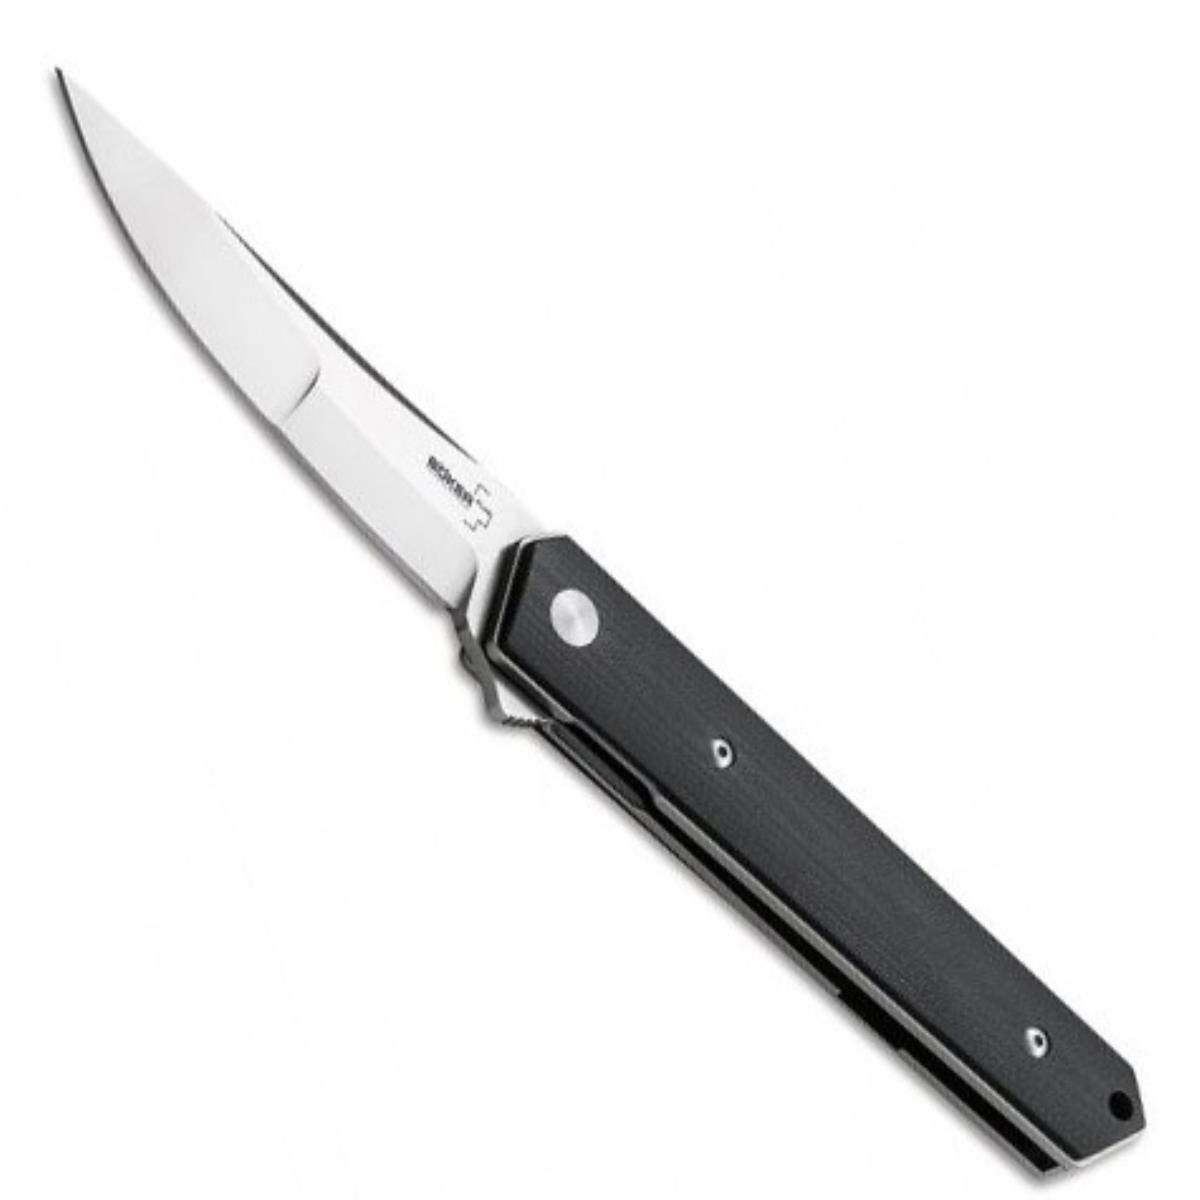 Нож складной чёрная рукоять G10, сталь VG-10  BK01BO282 Kwaiken Duplex Boker нож страж сталь aus 8 рукоять хаки кизляр